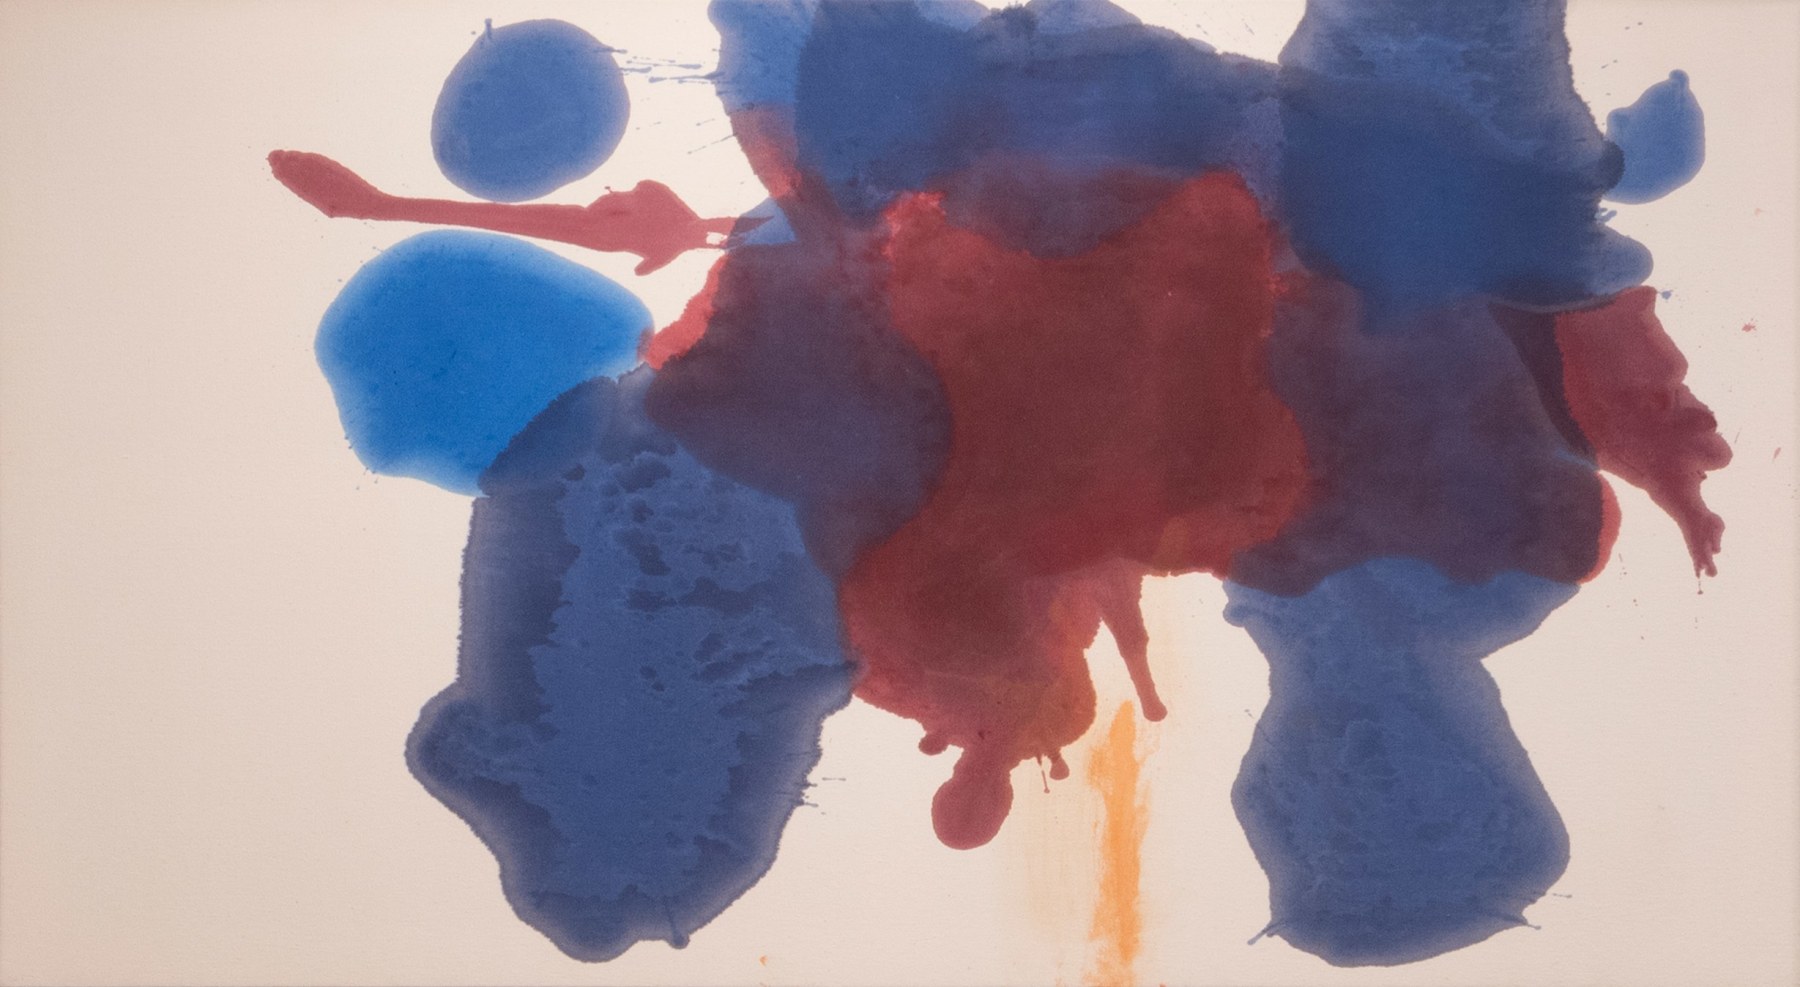 HELEN FRANKENTHALER (1928-2011)

Blue Moon

1963

Acrylic on canvas

48 1/2 x 88 inches

123.2 x 223.5cm